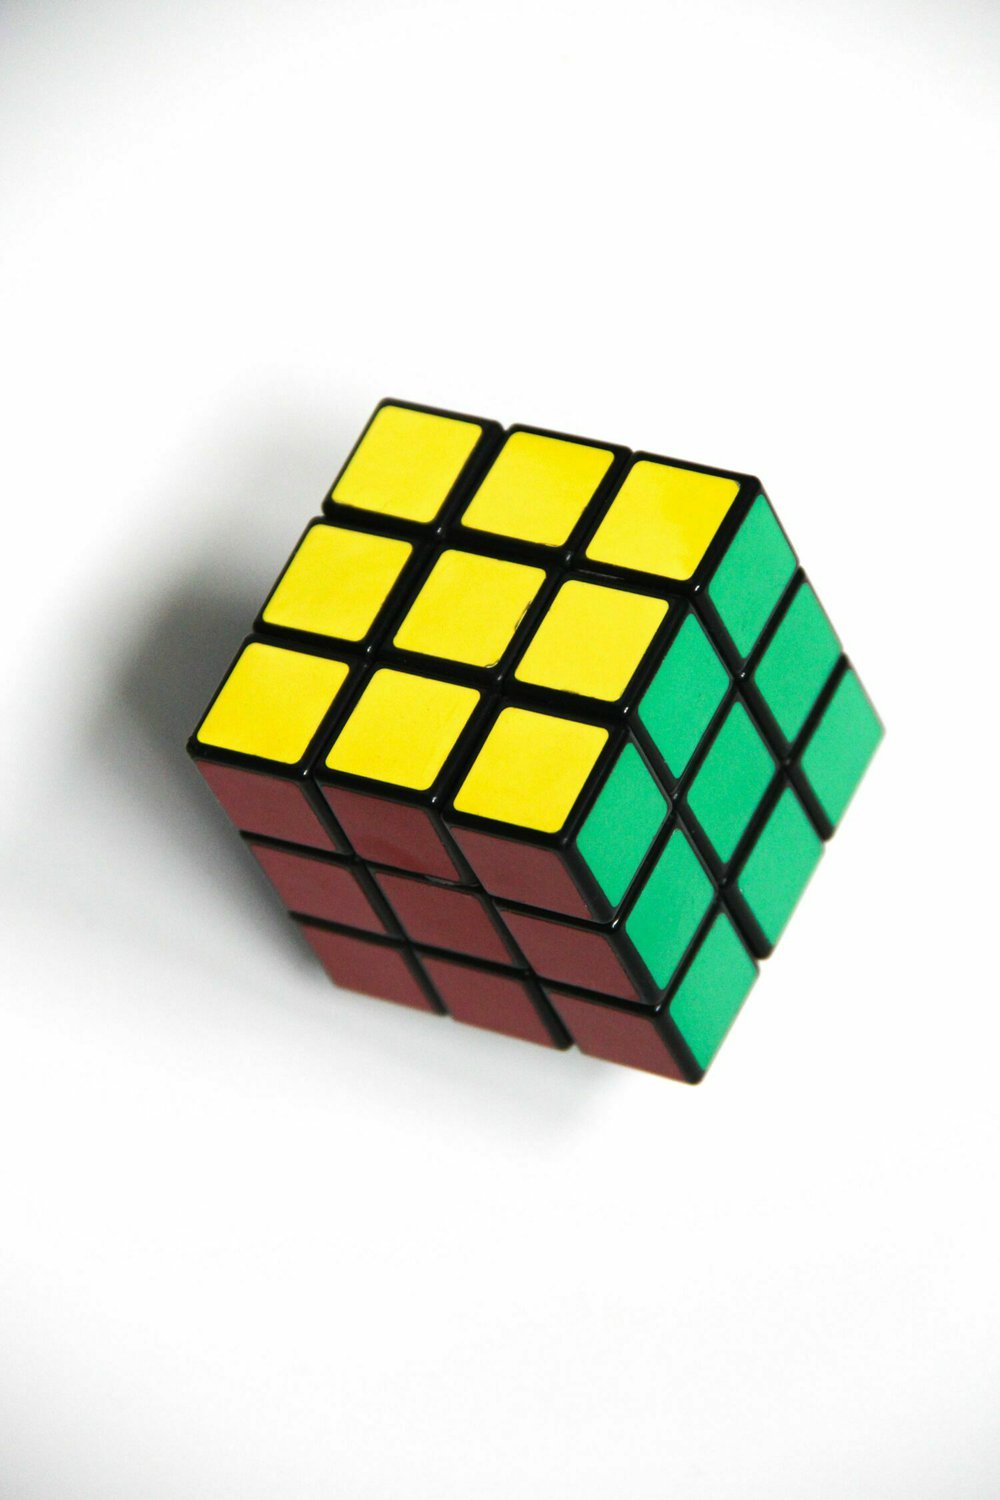 Ein gelöster Rubiks Cube auf weißem Hintergrund, der genauso bunt ist wie die Inhalte dieses Tech-Podcasts